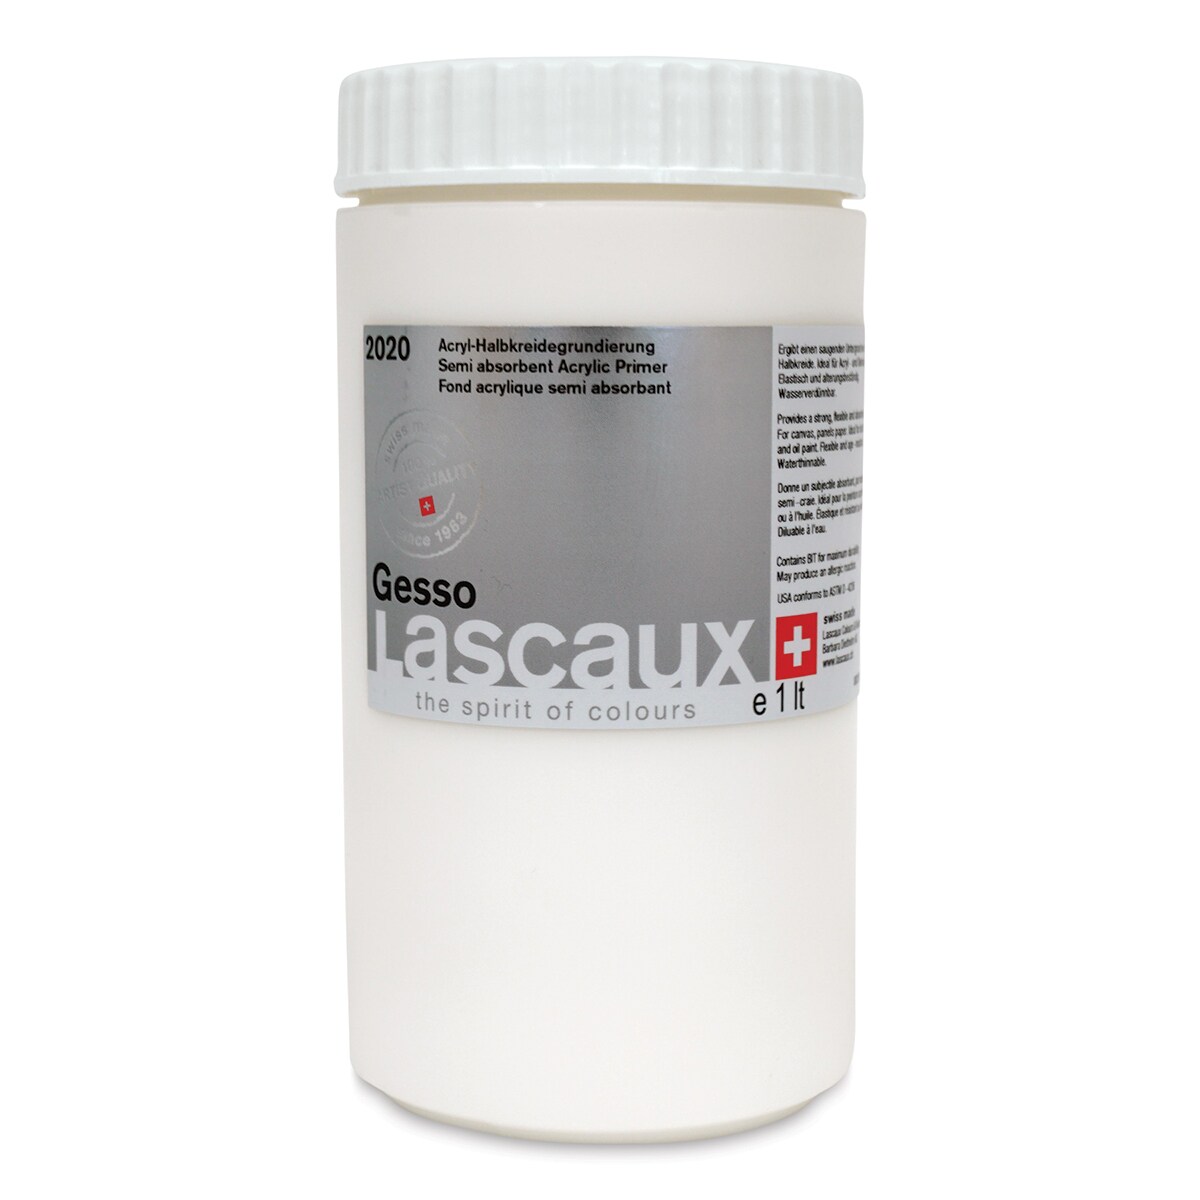 Lascaux Gesso - 1 liter jar